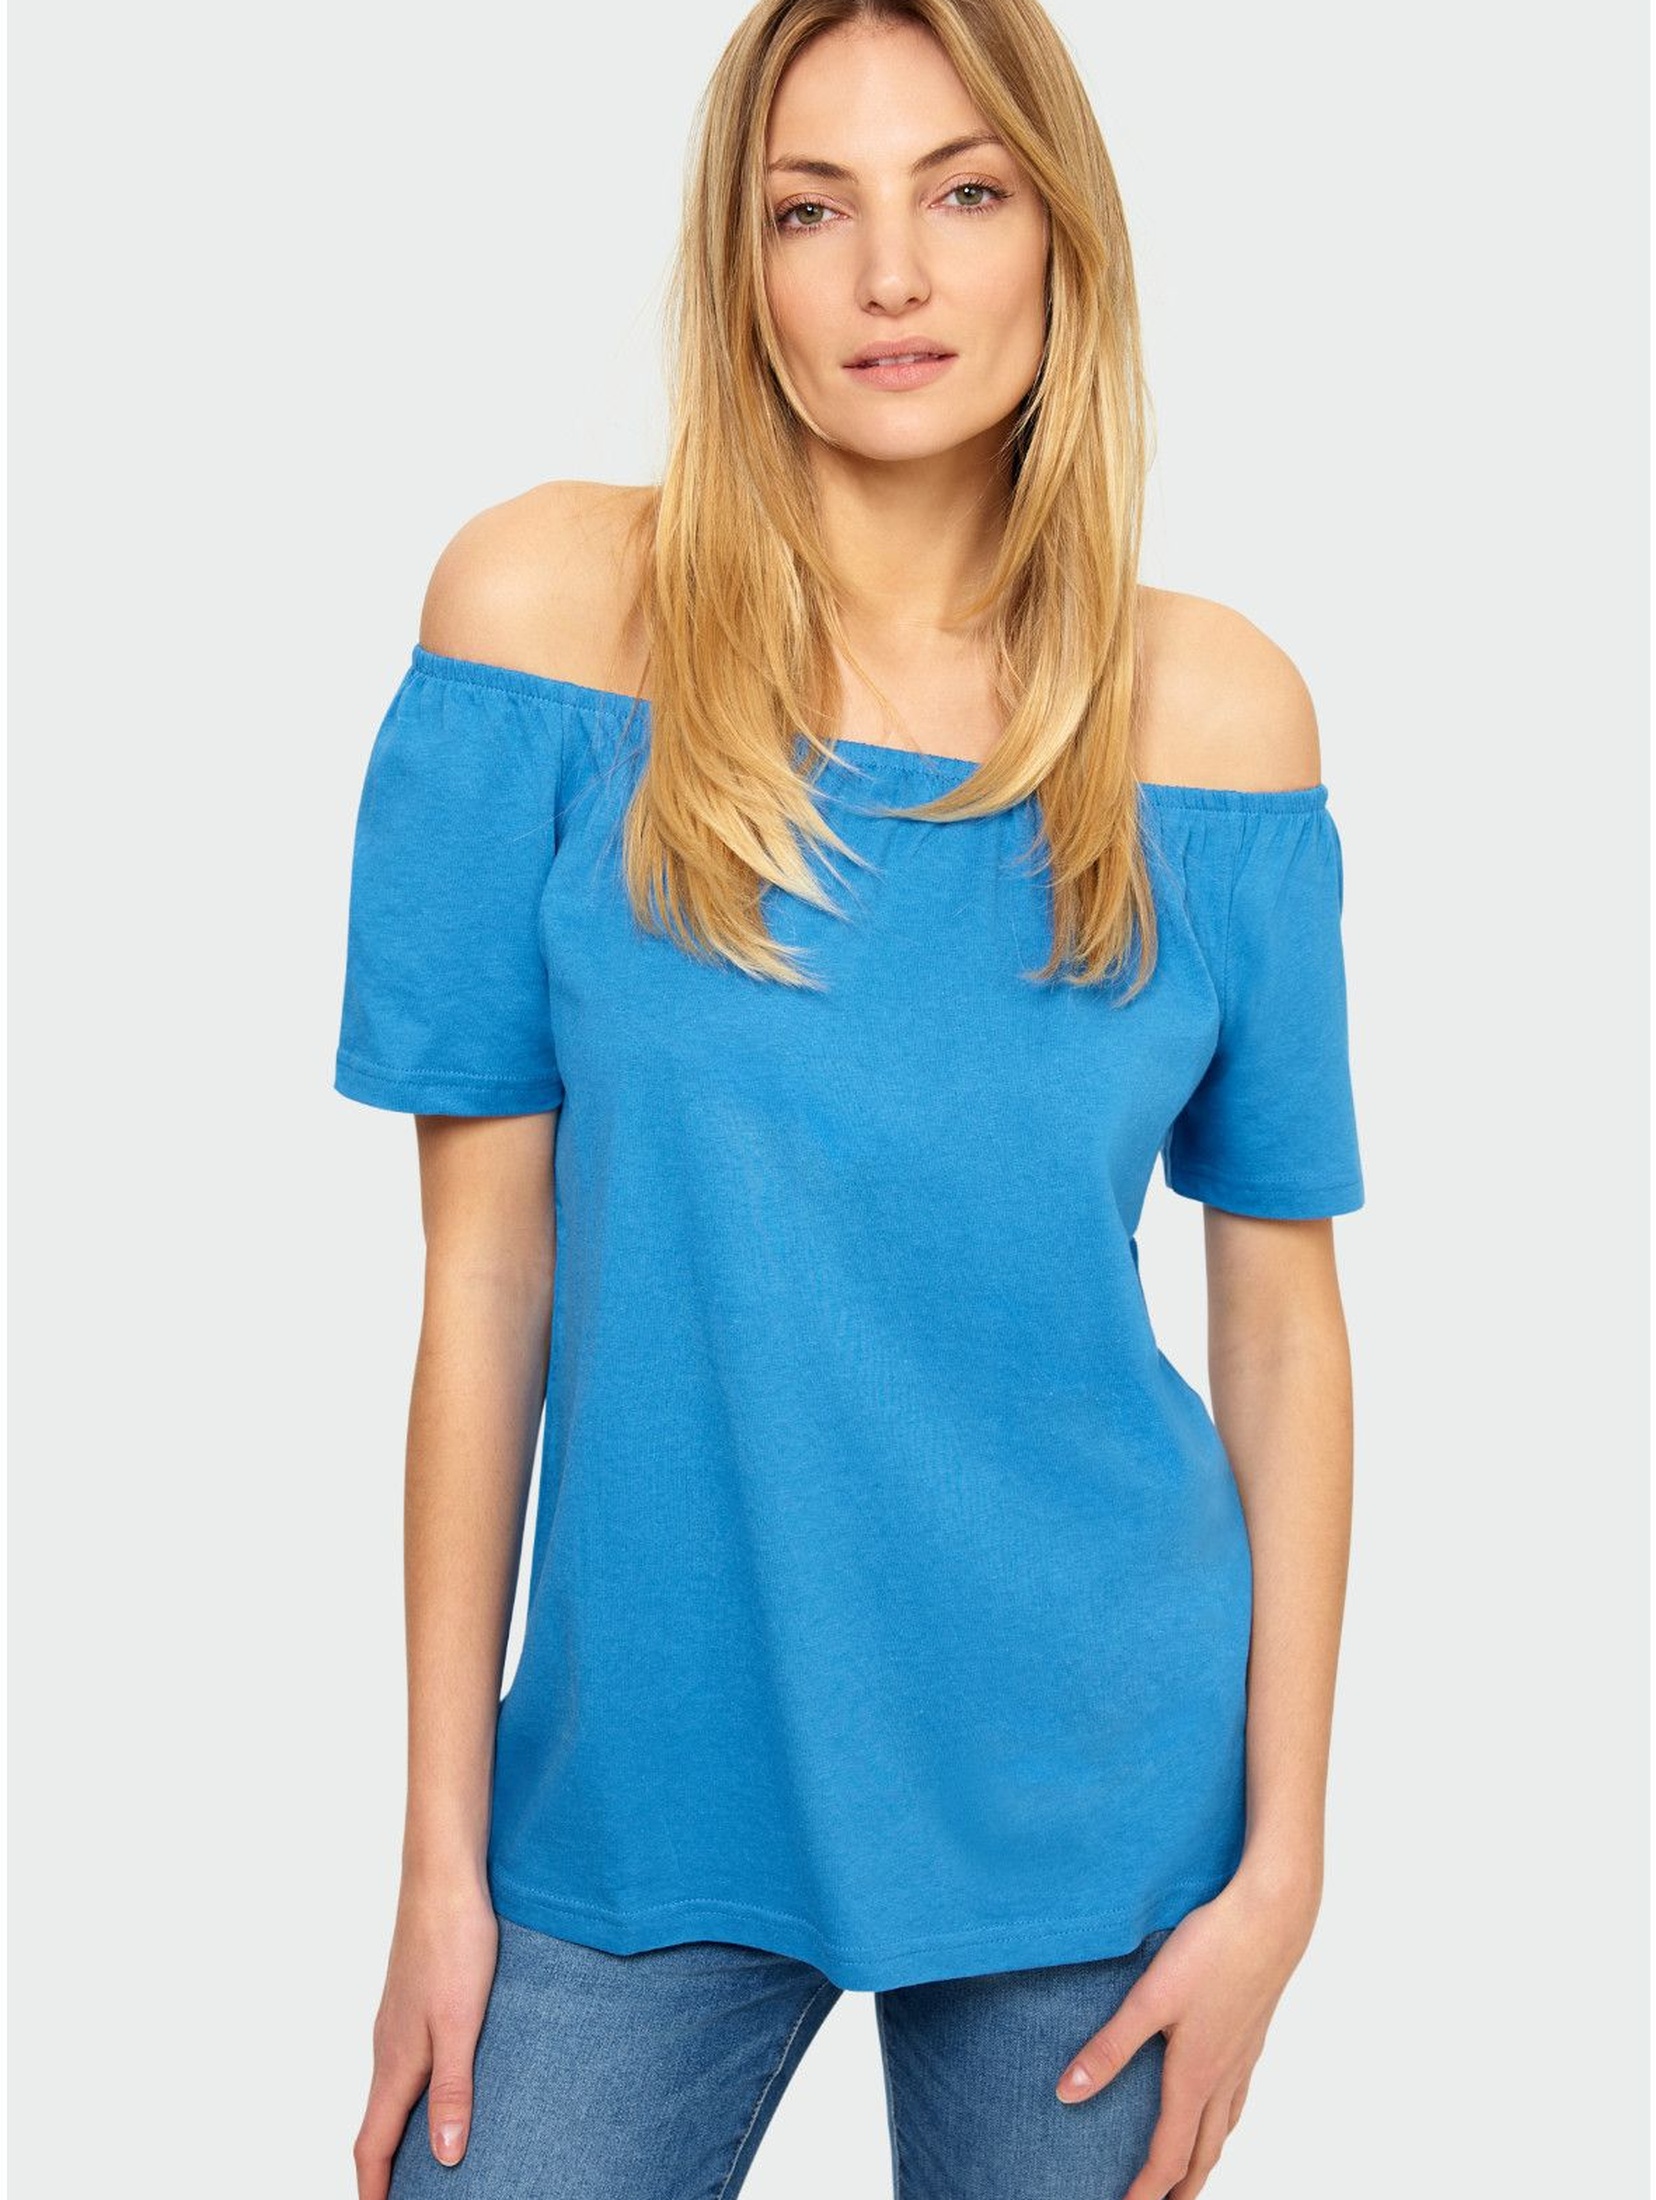 Niebieska bluzka damska z odkrytymi ramionami- niebieska